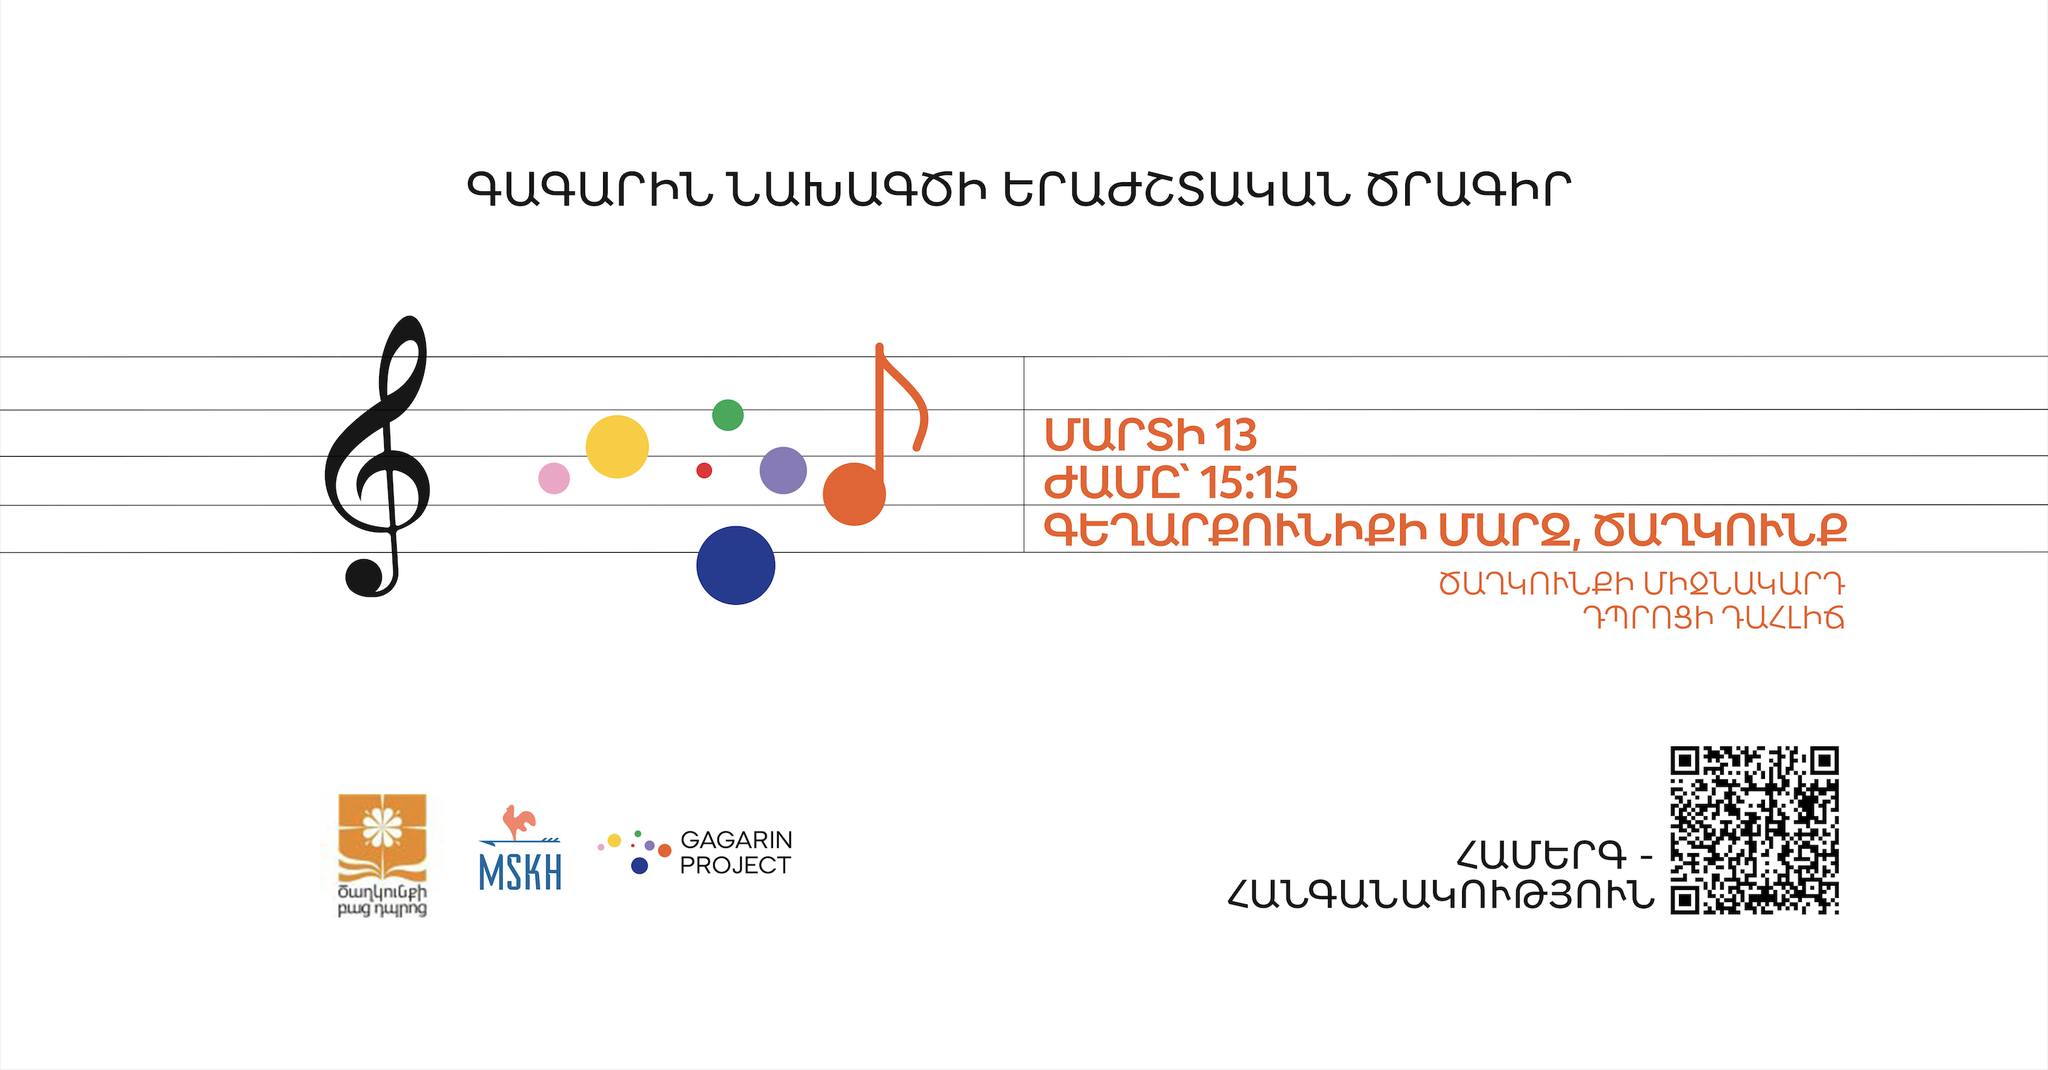 Concerto-raccolta fondi del programma musicale del progetto Gagarin